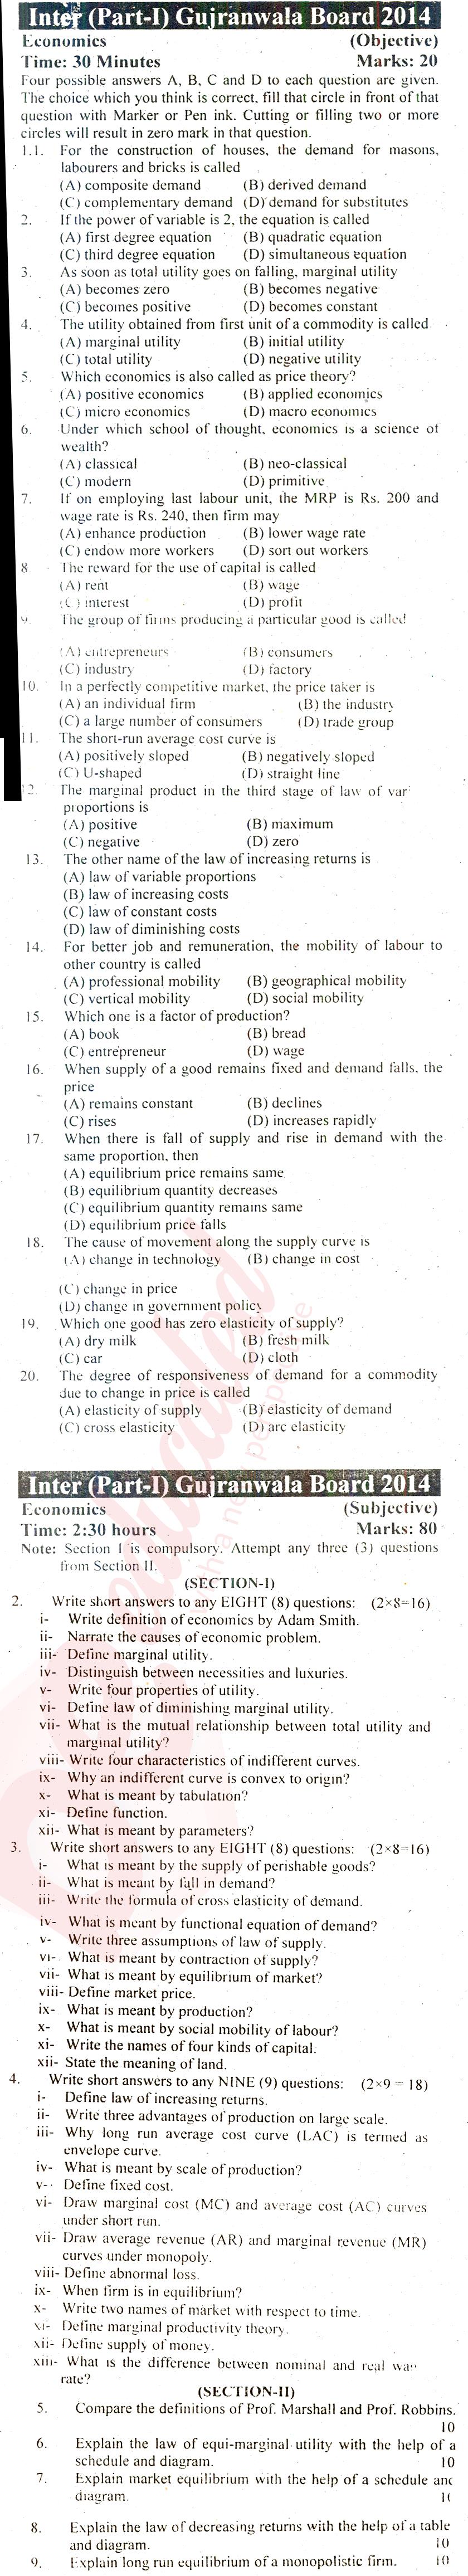 Economics FA Part 1 Past Paper Group 1 BISE Gujranwala 2014